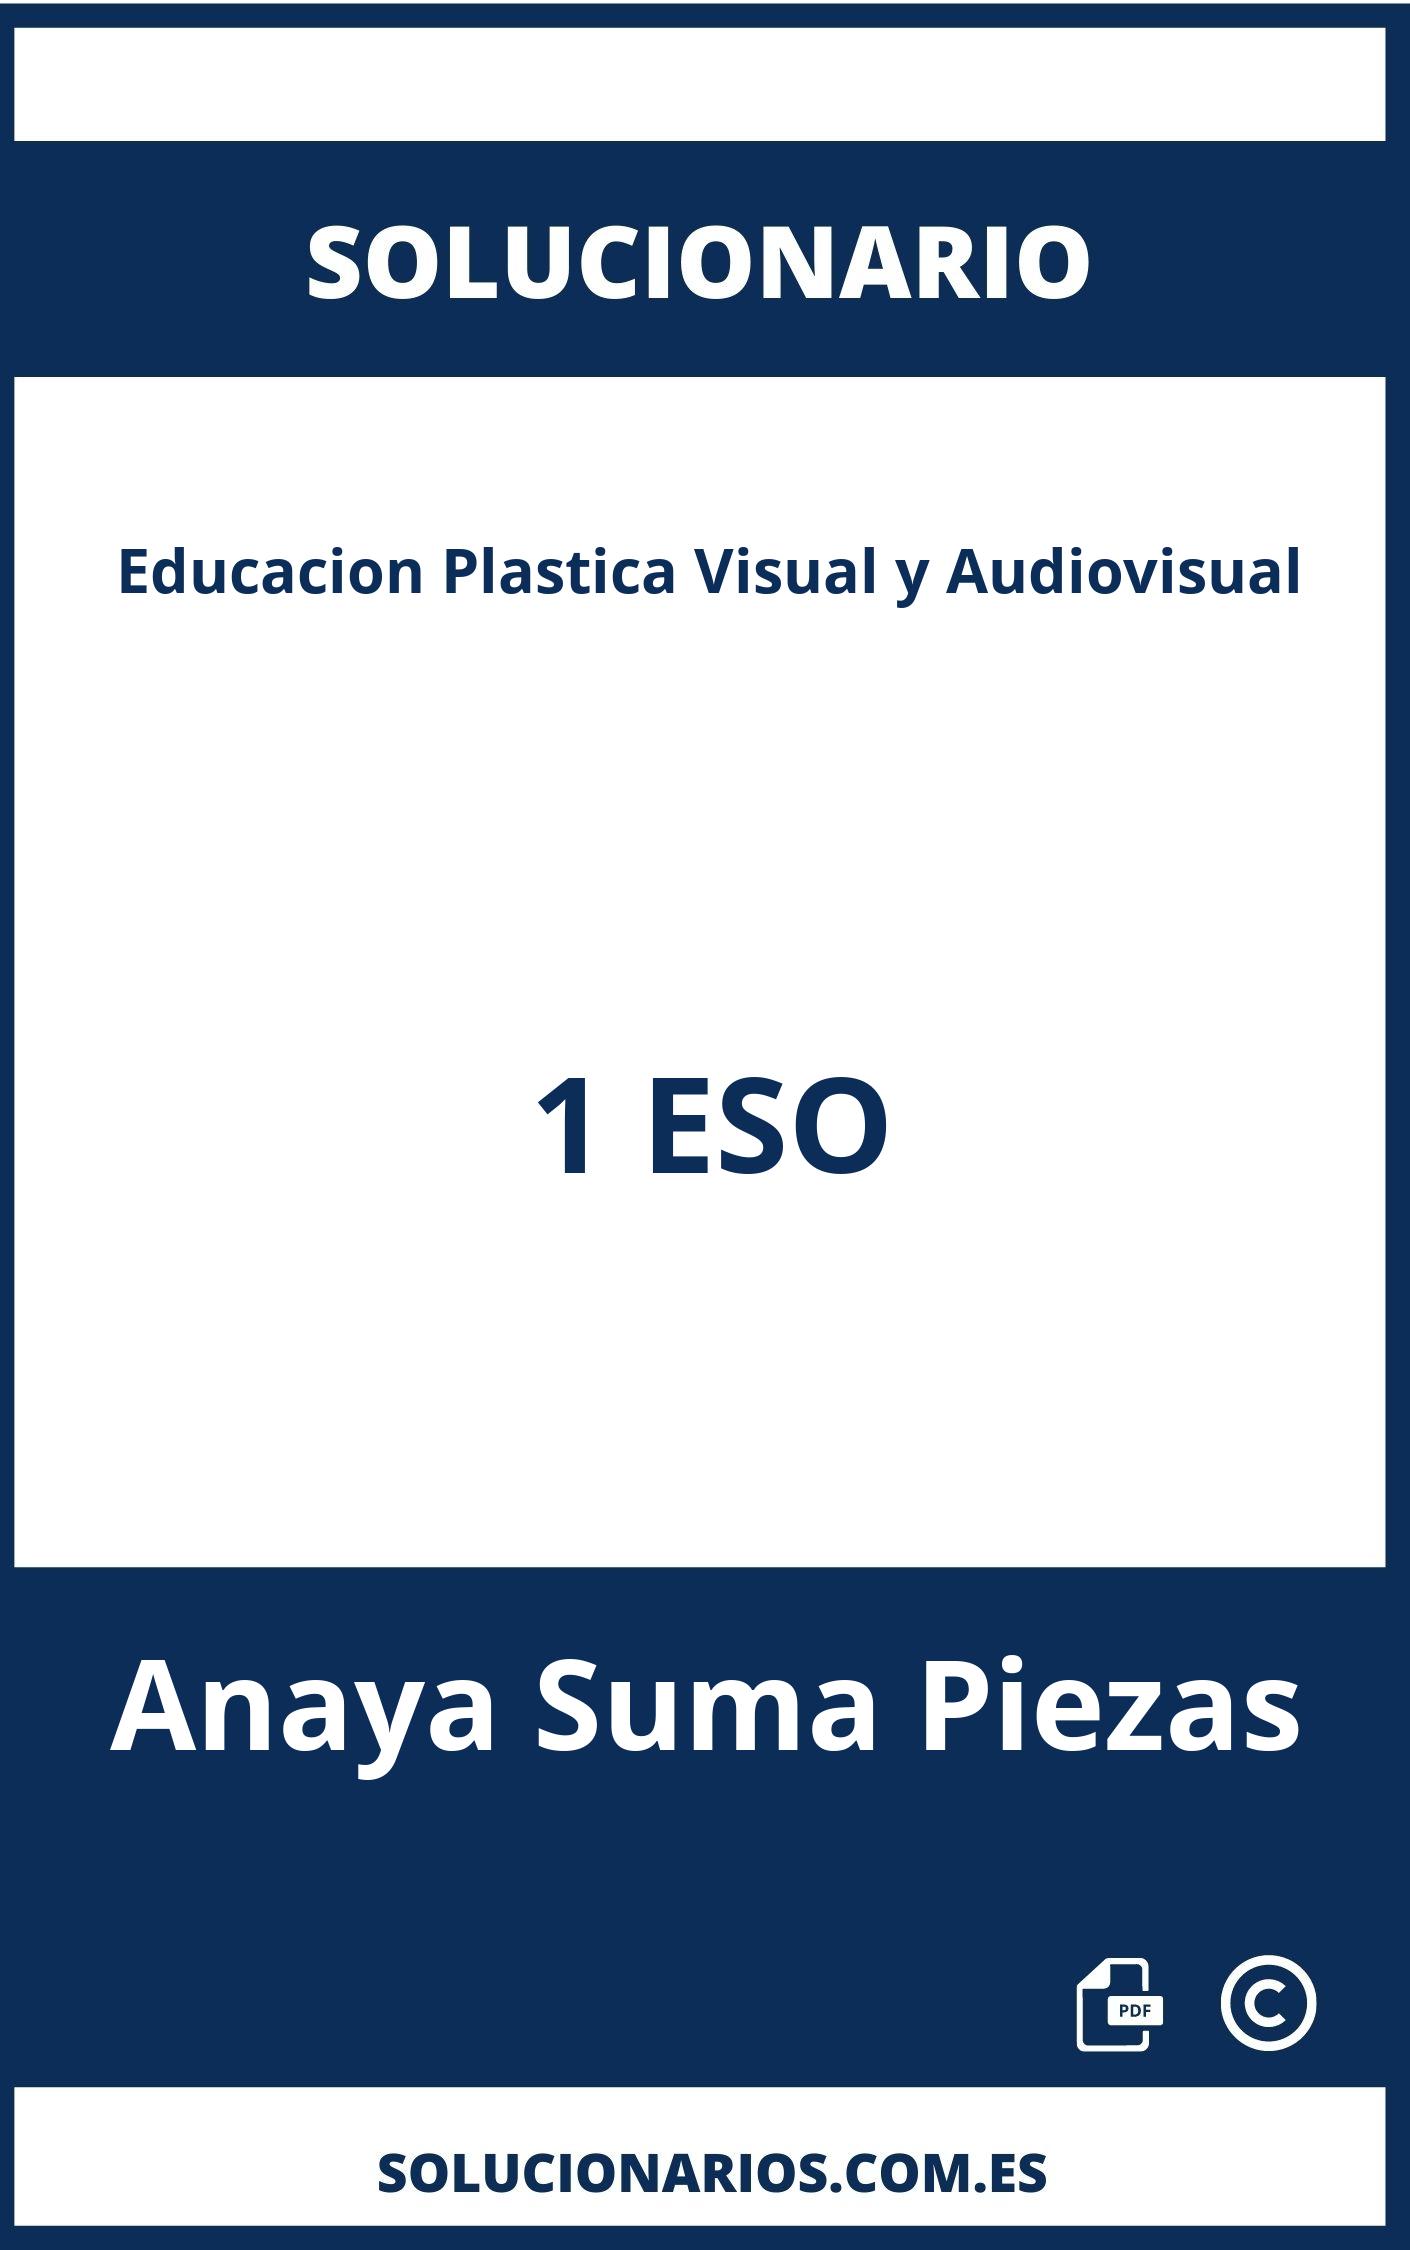 Solucionario Educacion Plastica Visual y Audiovisual 1 ESO Anaya Suma Piezas